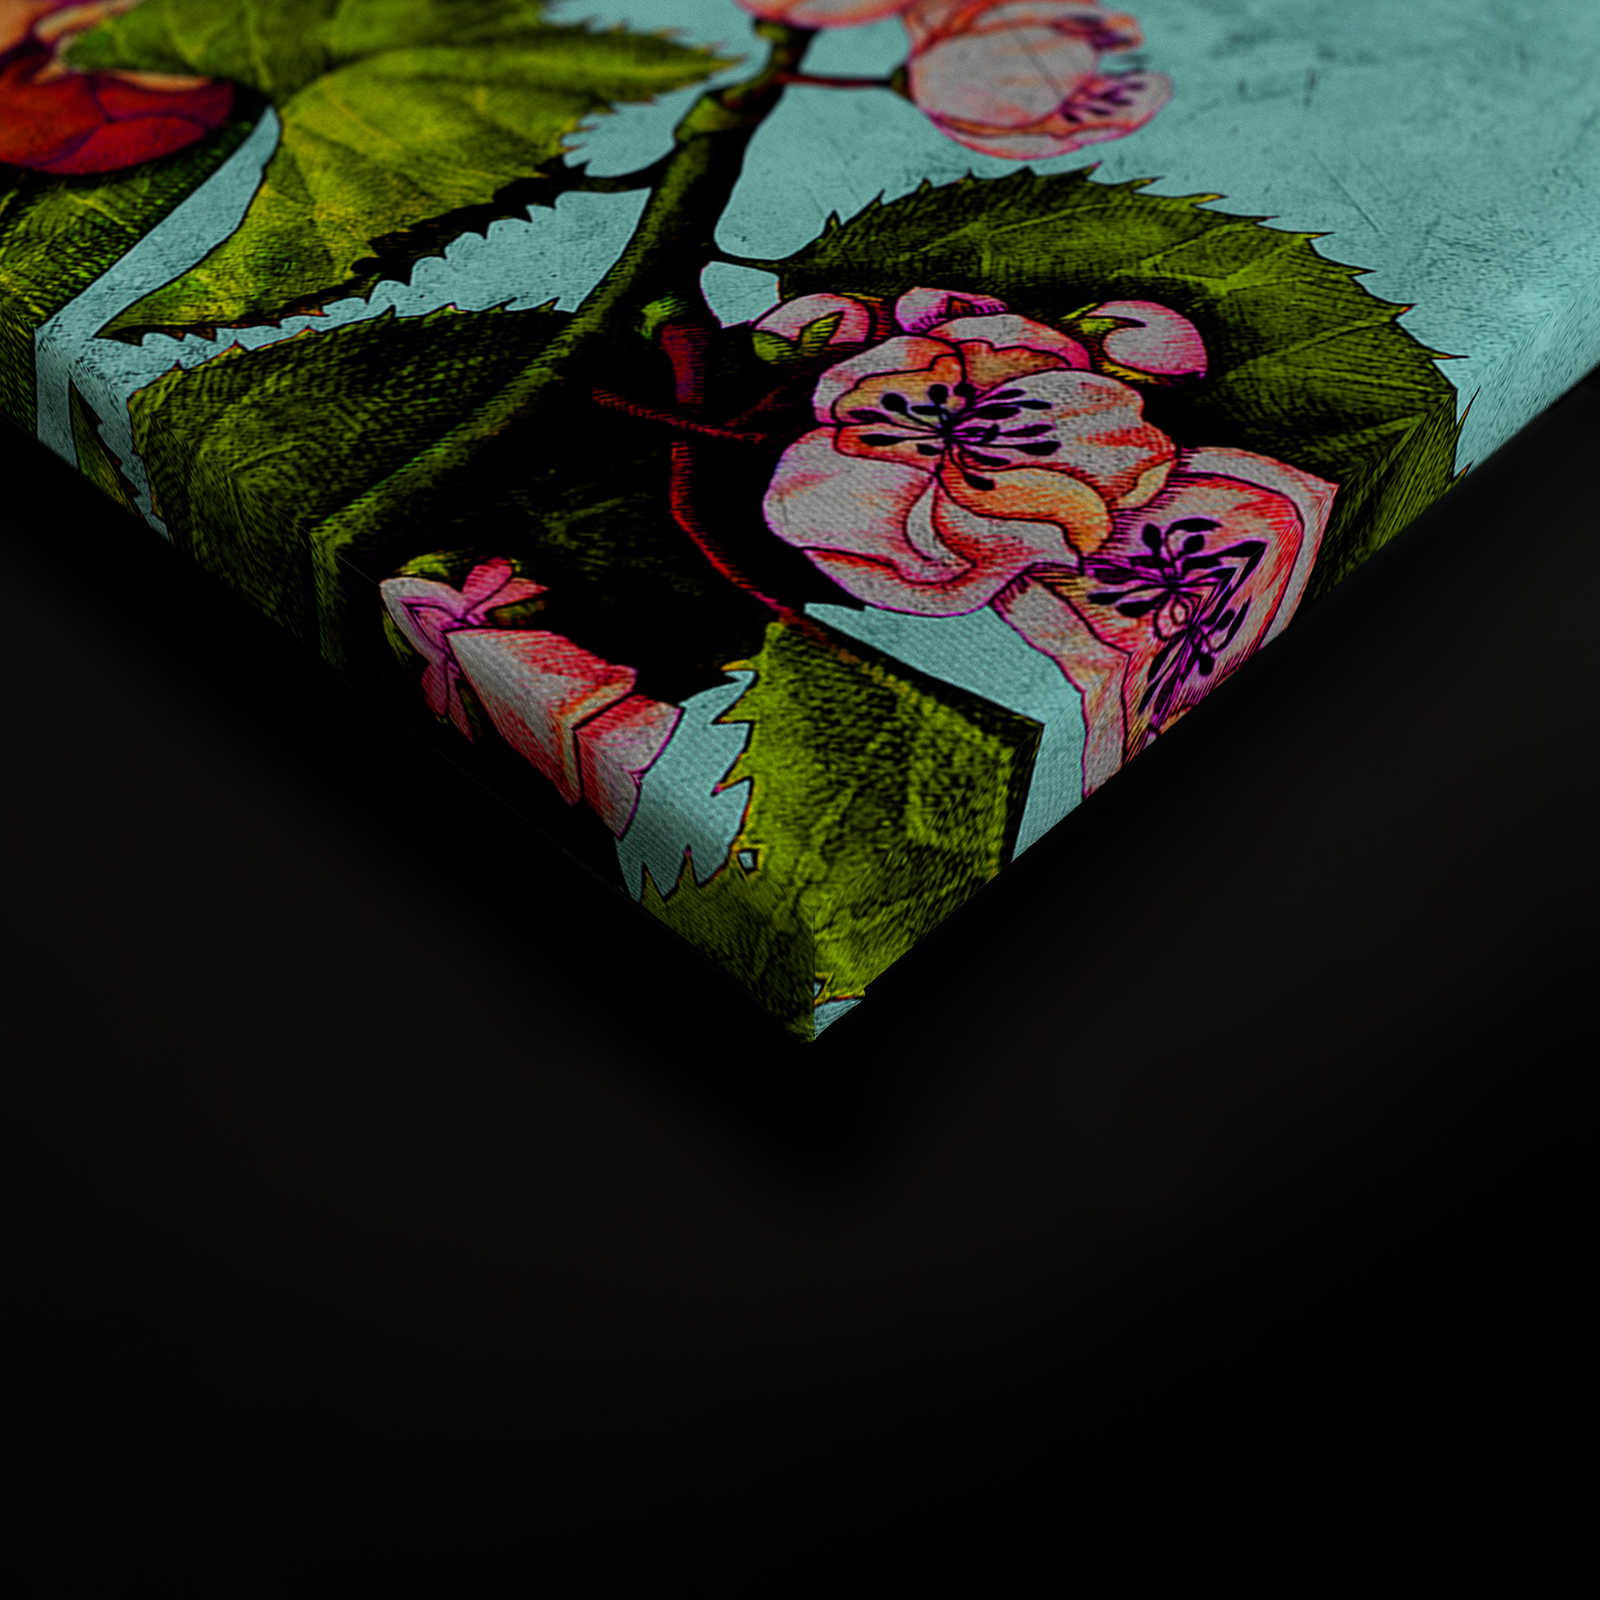             Tropical Passion 1 - Tropisches Leinwandbild mit Blütenmuster – 0,90 m x 0,60 m
        